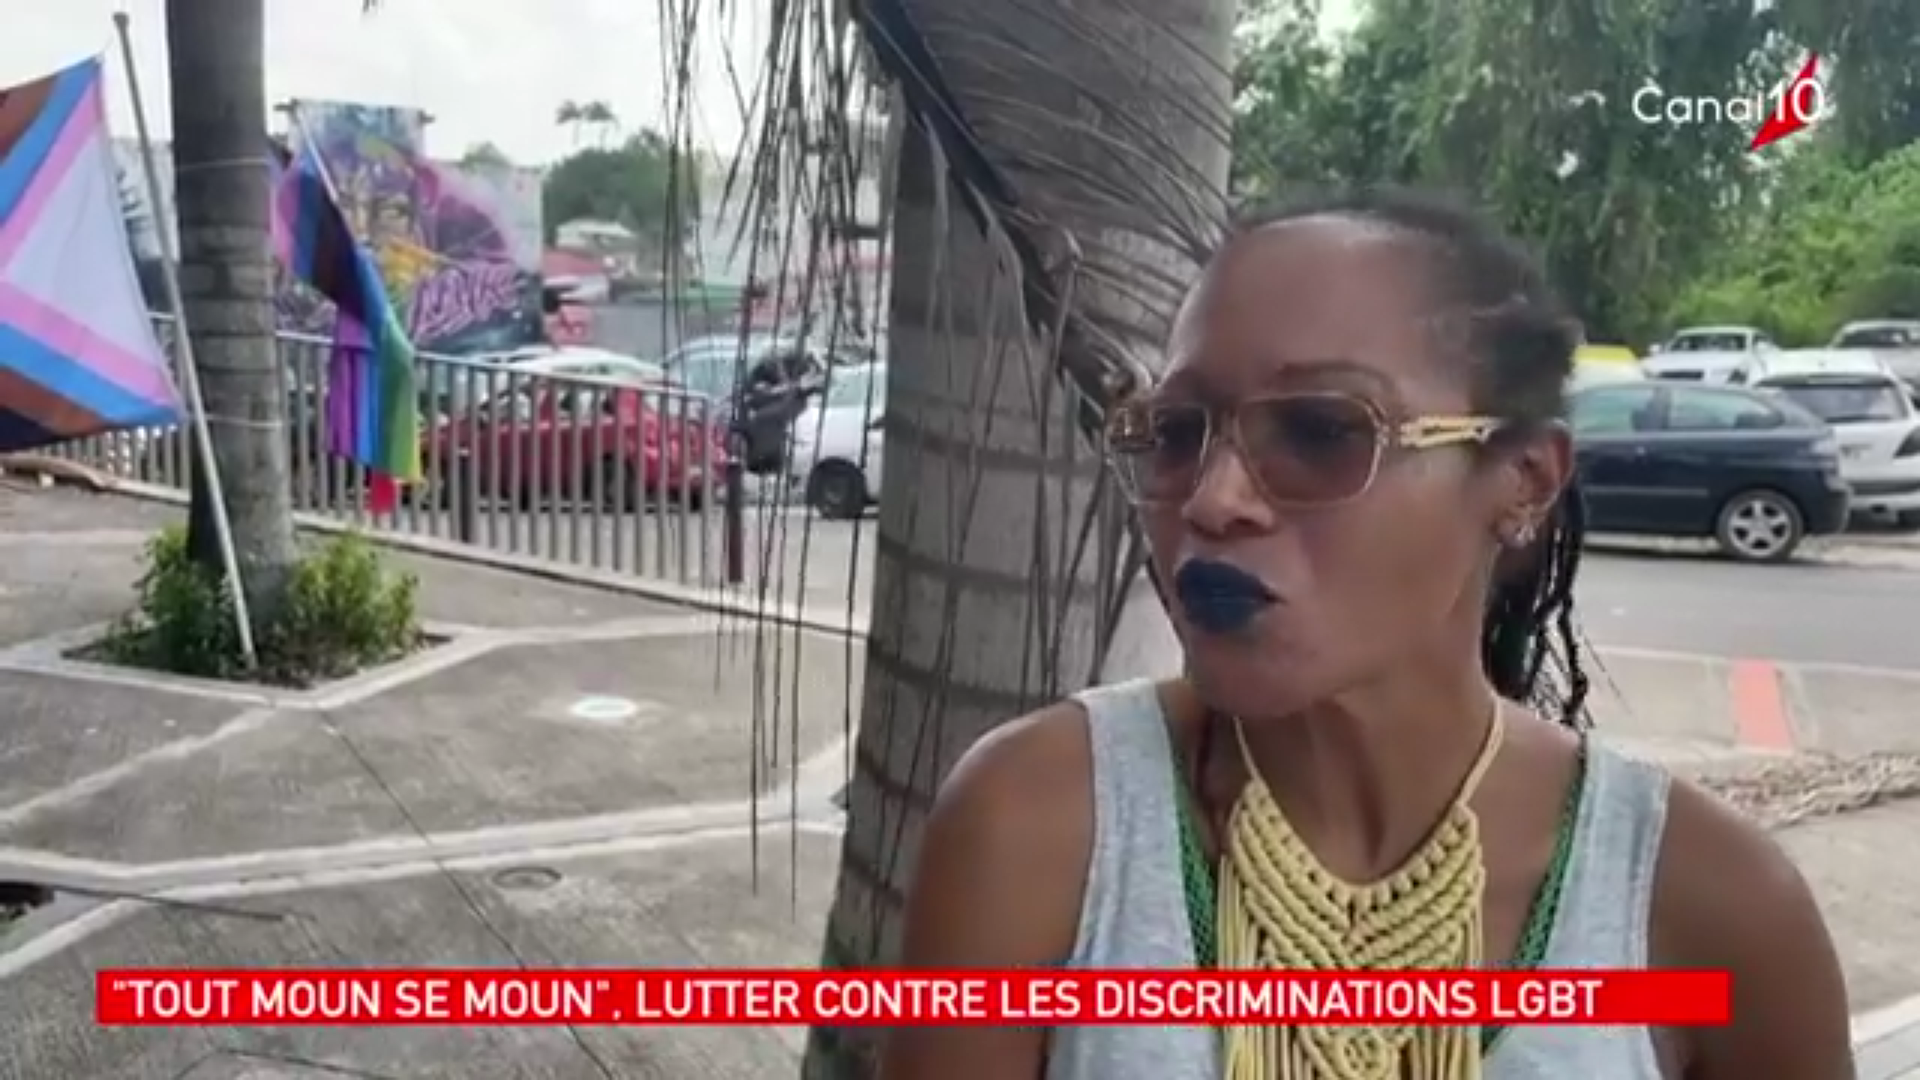 [Vidéo] Onews Guadeloupe. Le jt de canal 10